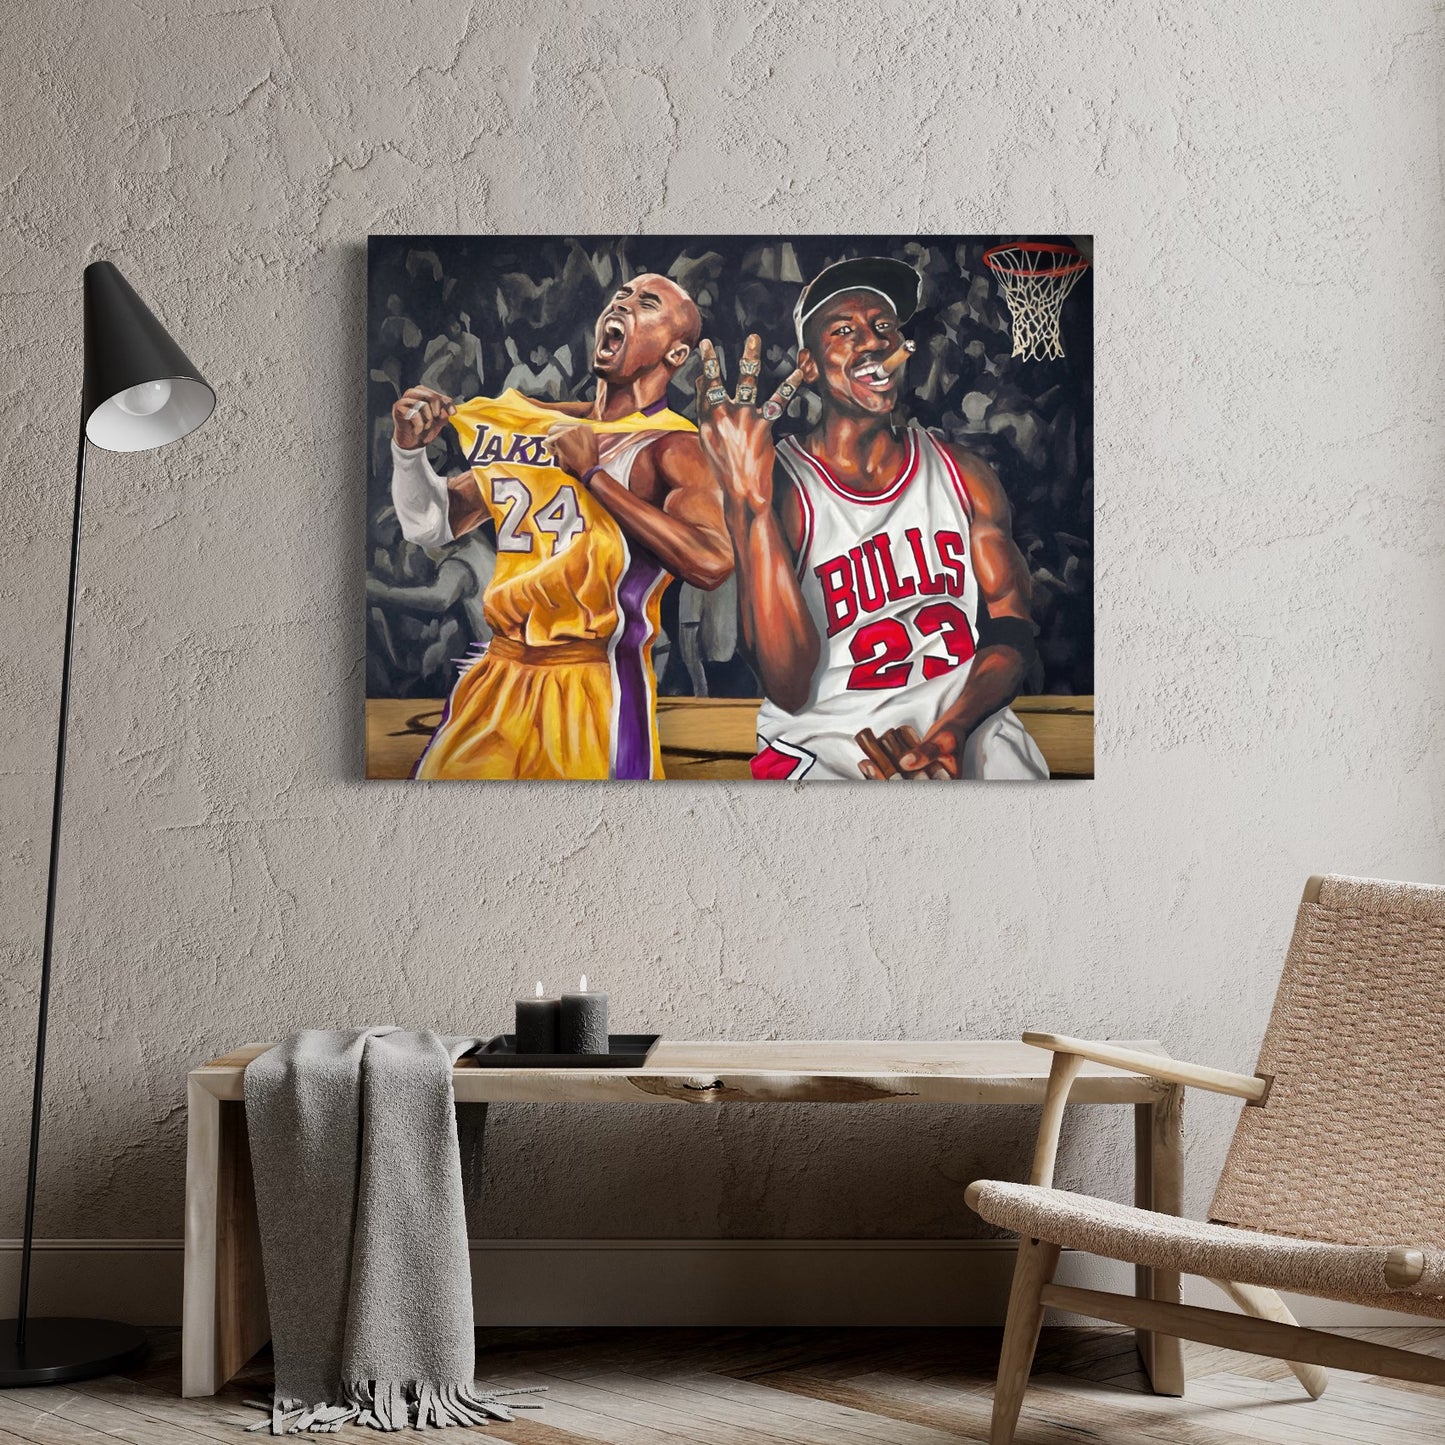 Kobe and Jordan - Poster Print